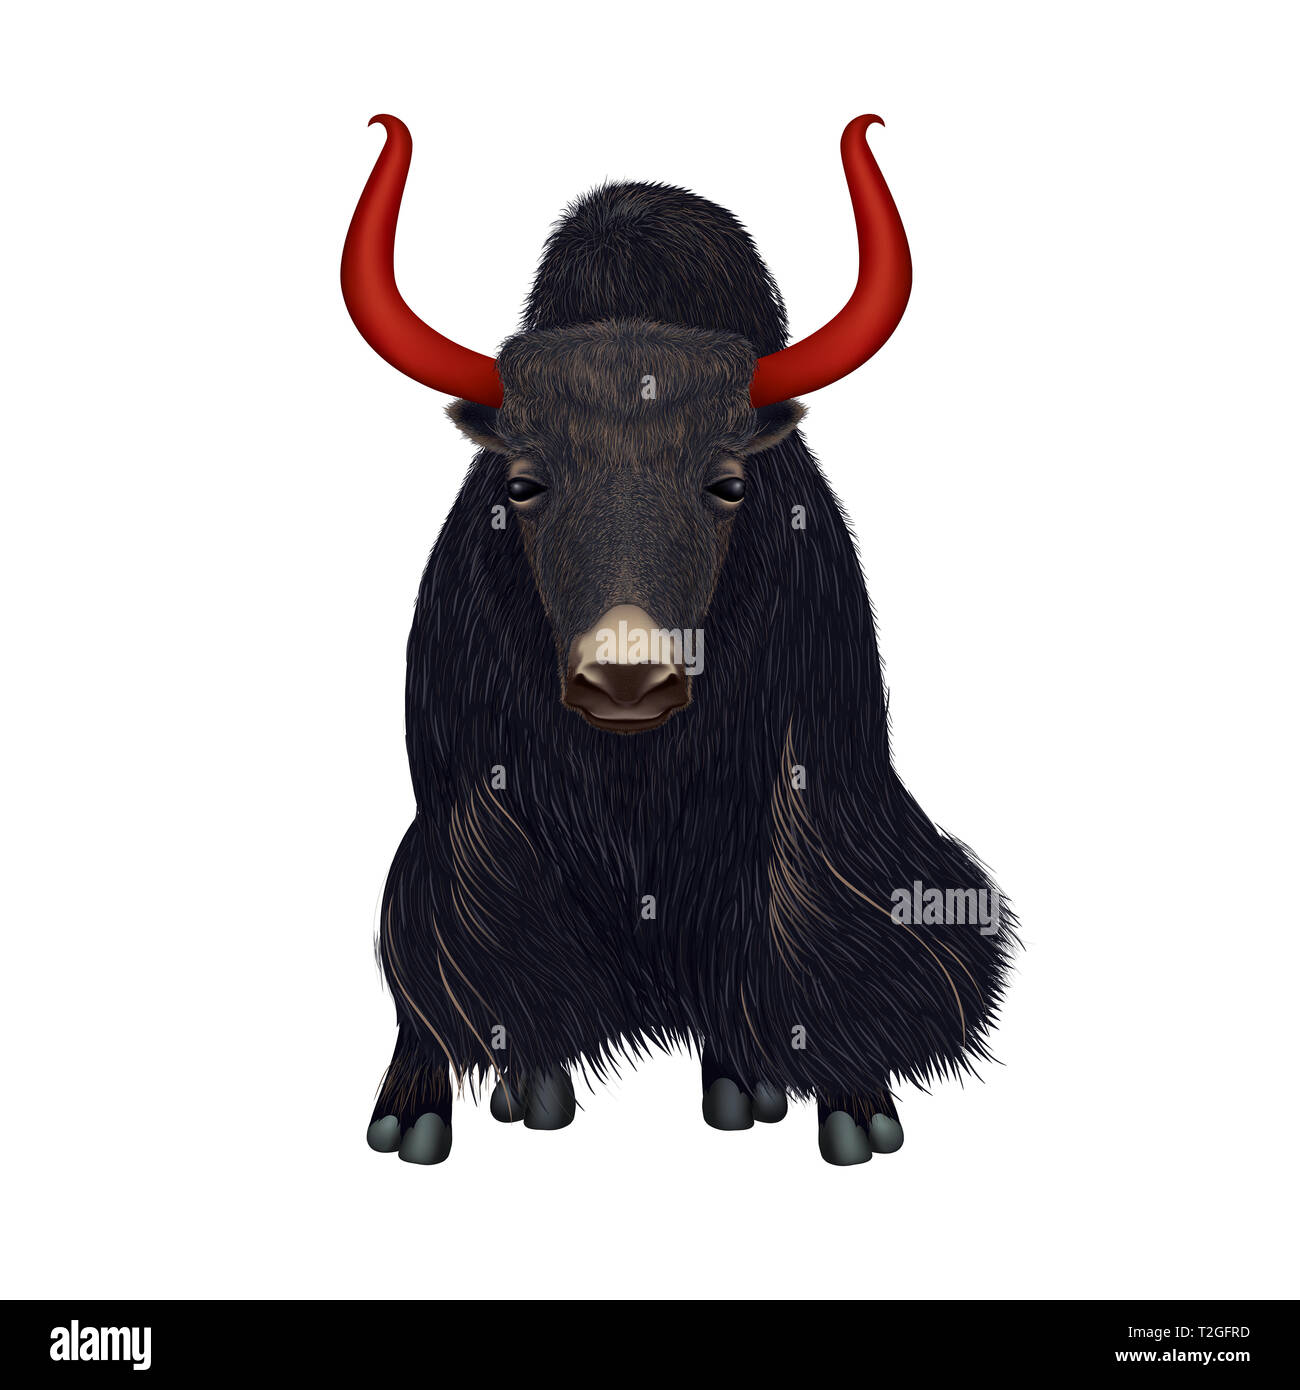 Hand drawn portrait réaliste de yak noir - illustration isolé sur fond blanc - composition symétrique Banque D'Images